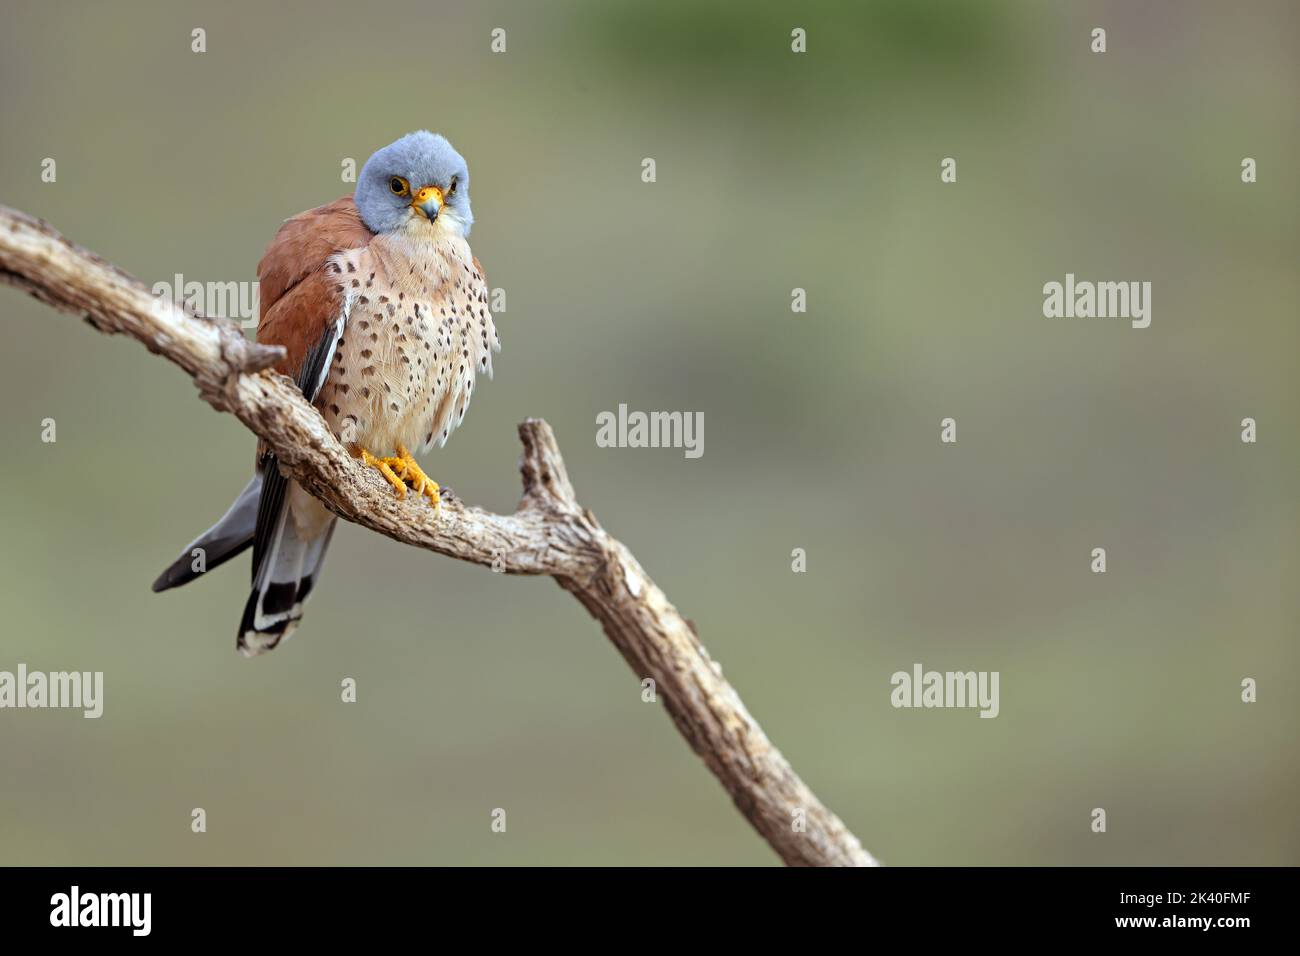 Kestrel menor (Falco naumanni), macho encaramado en una rama, España, Extremadura Foto de stock